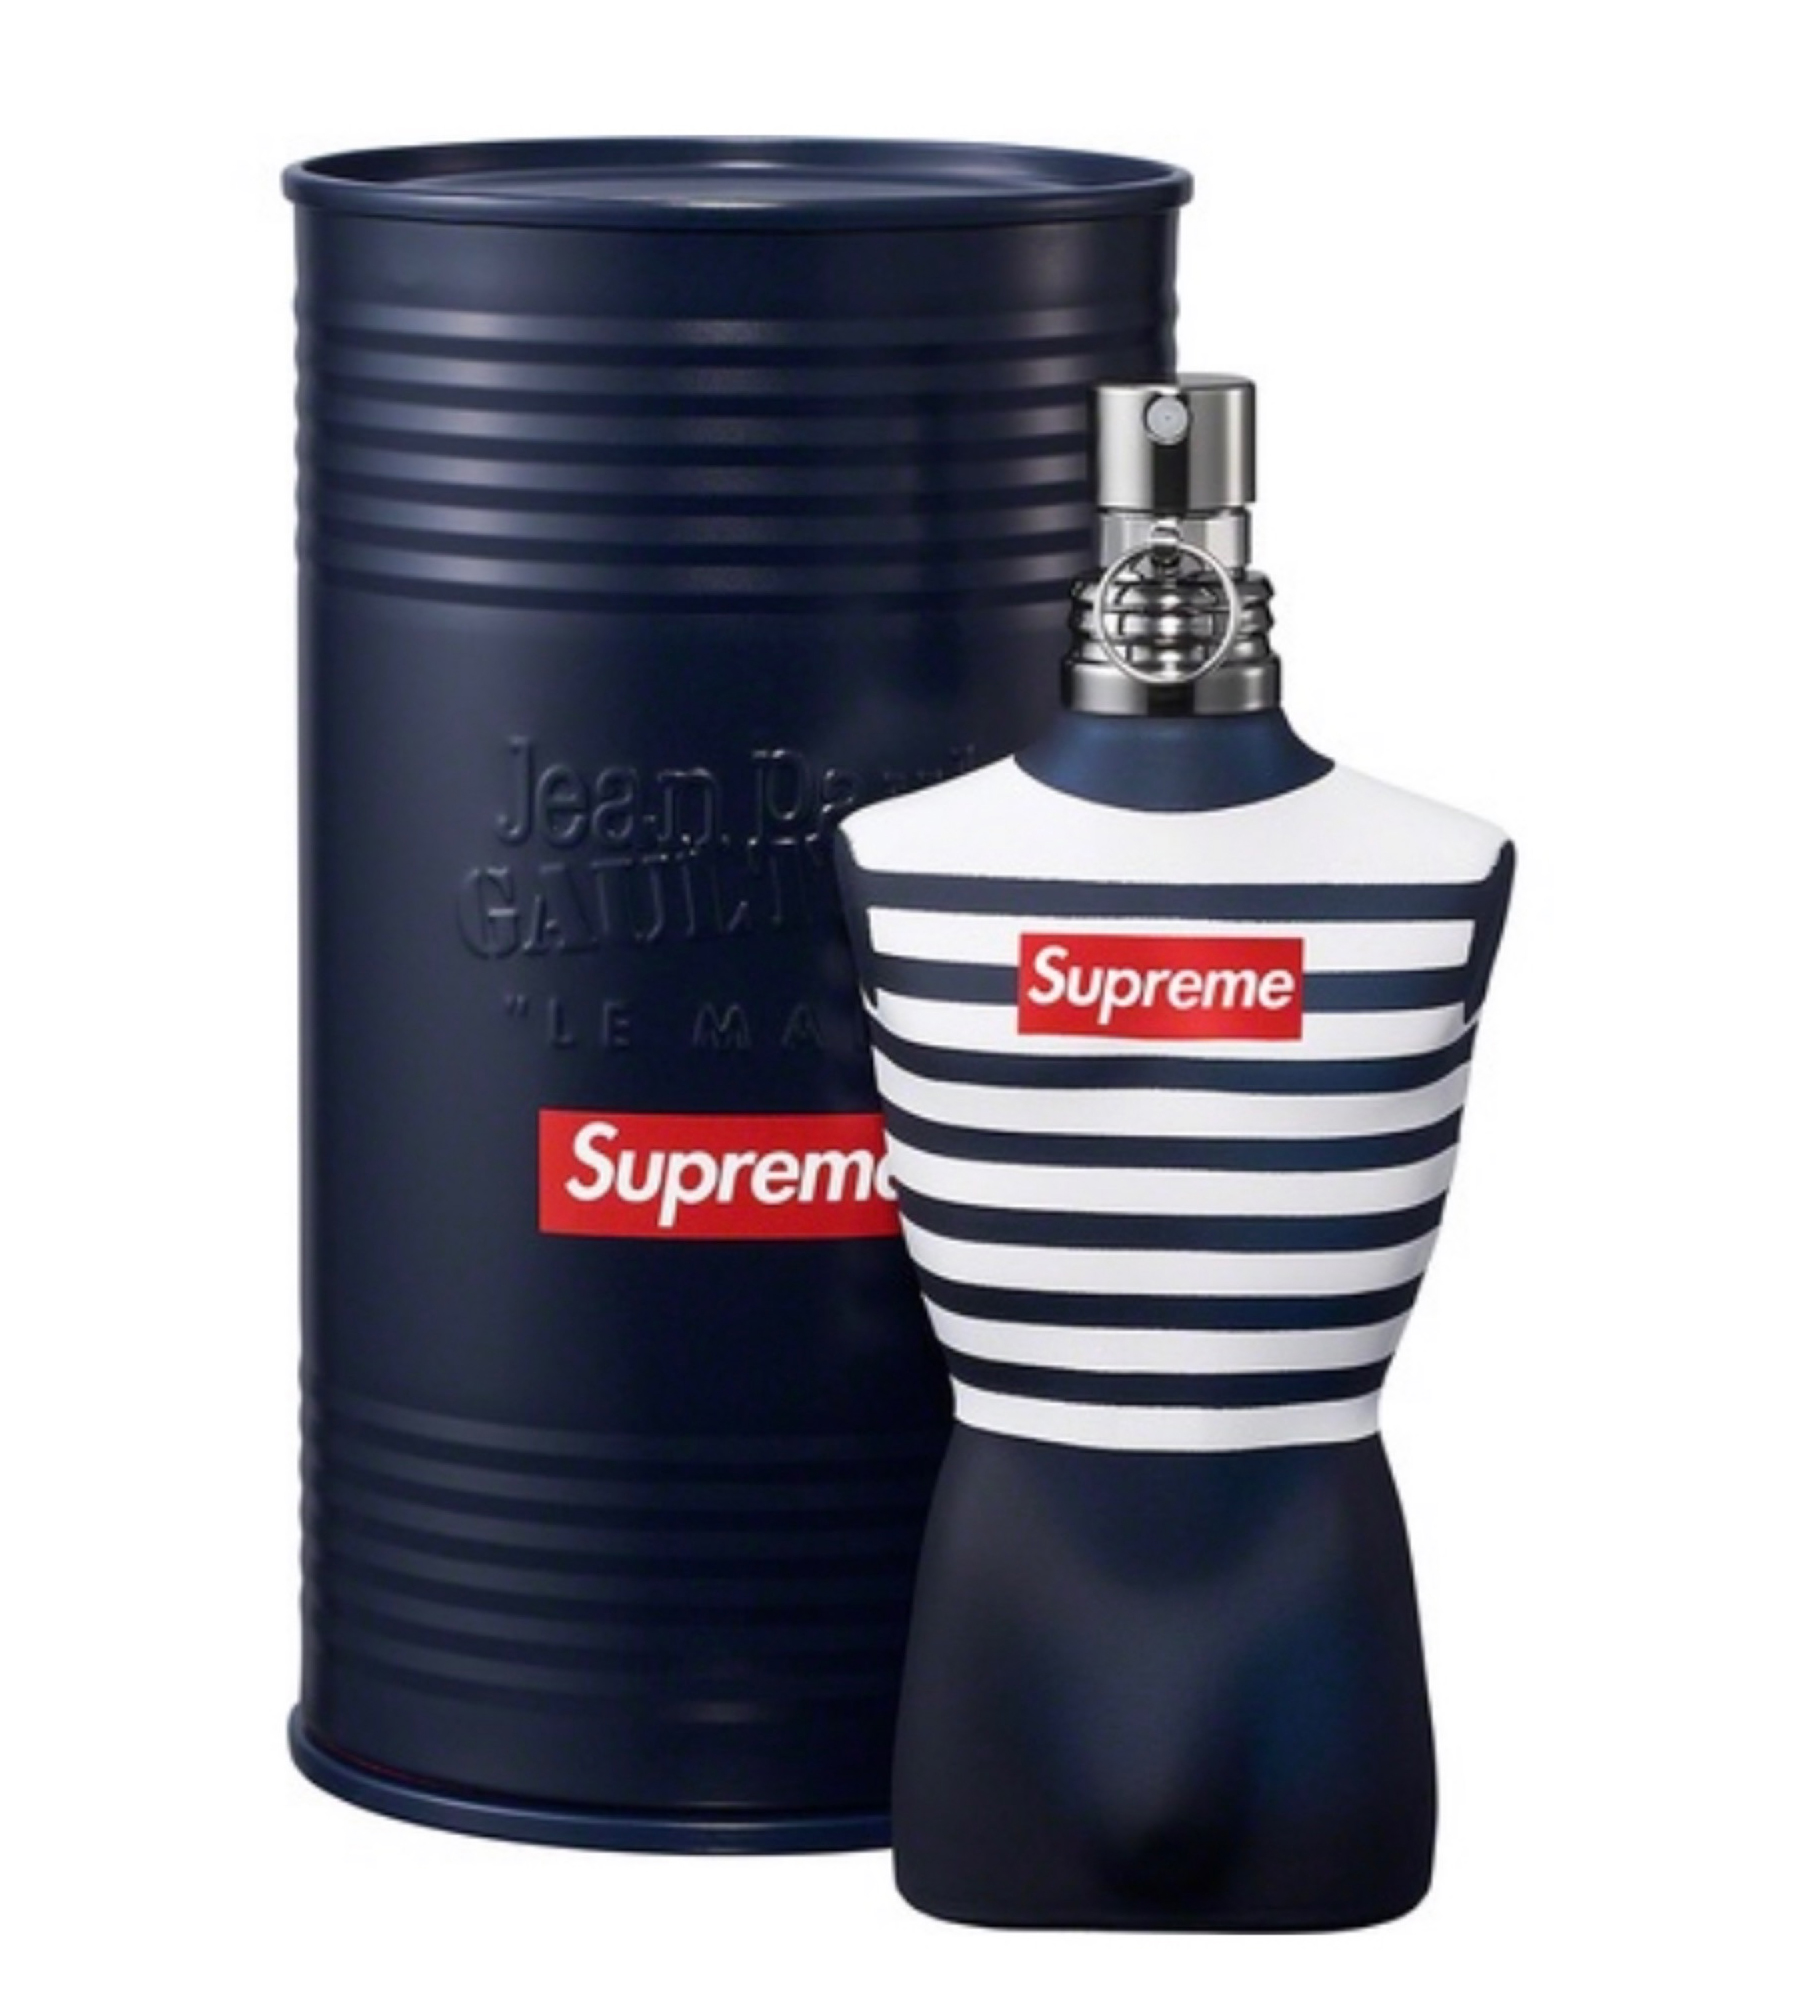 Le Male Supreme Edition Jean Paul Gaultier Cologne un nouveau parfum